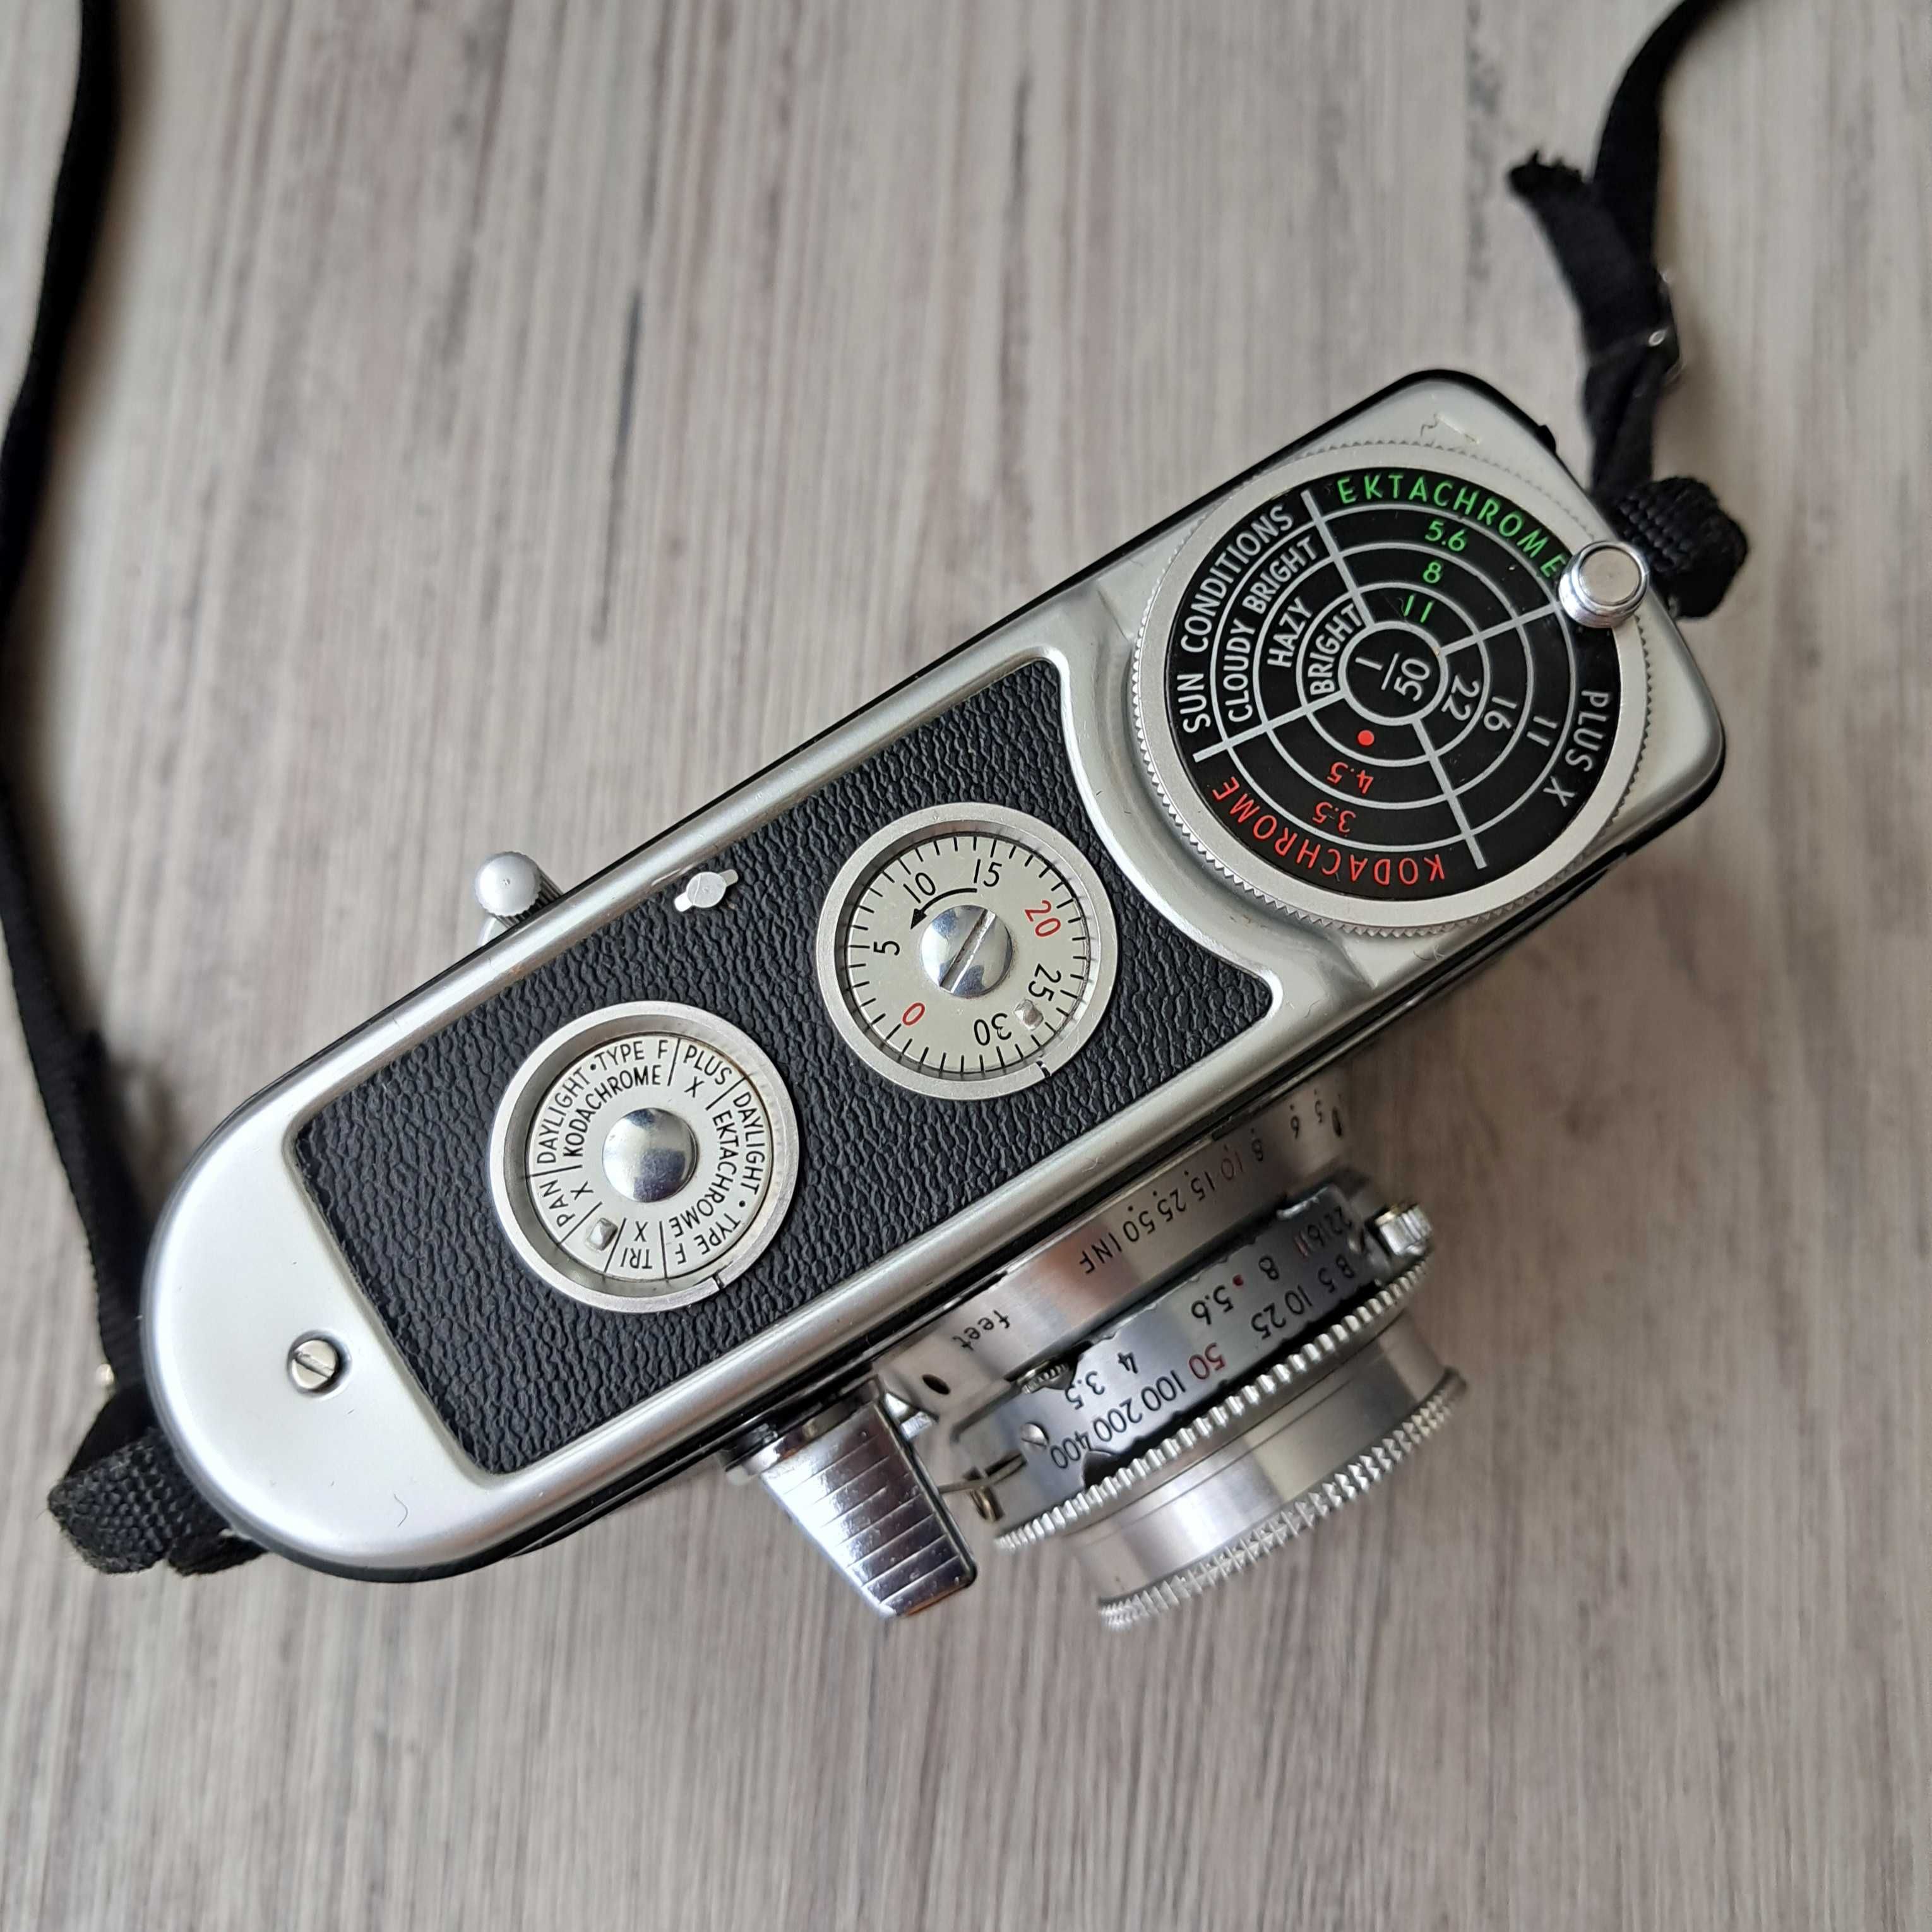 Плівкова камера Kodak Signet 40